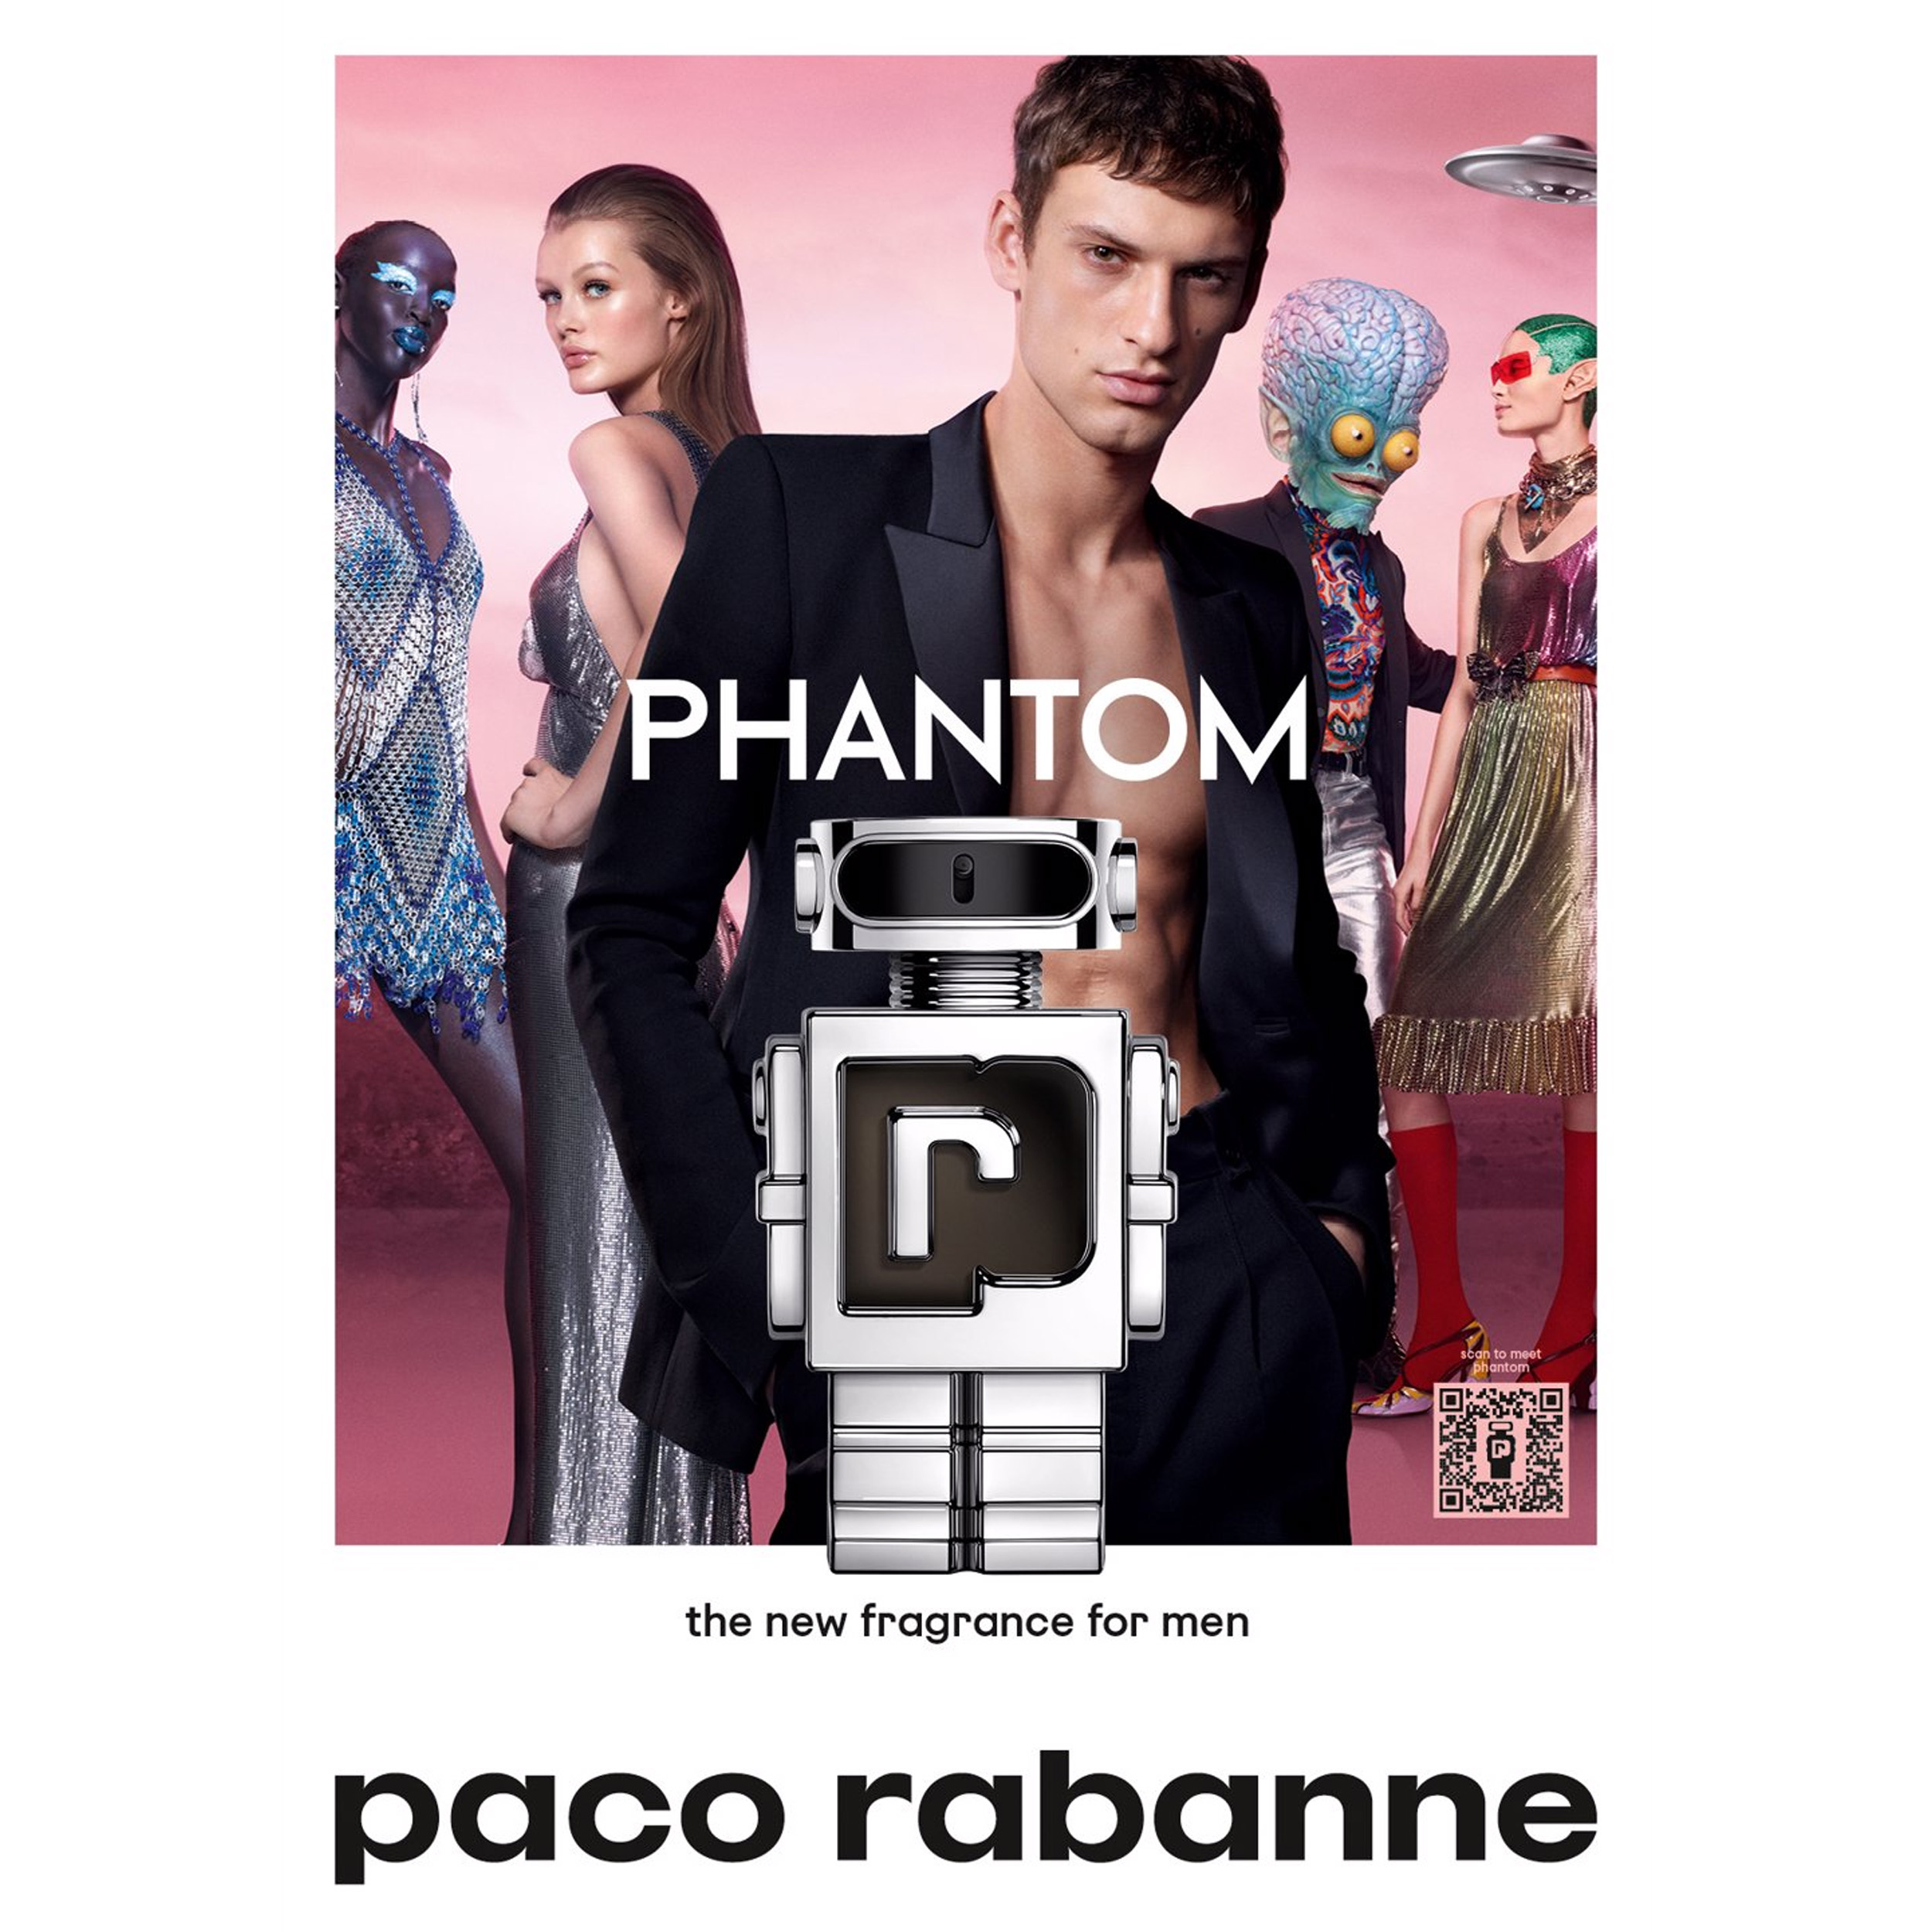 Perfume Phantom Paco Rabanne    (Replica Con Fragancia Importada)- Hombre 